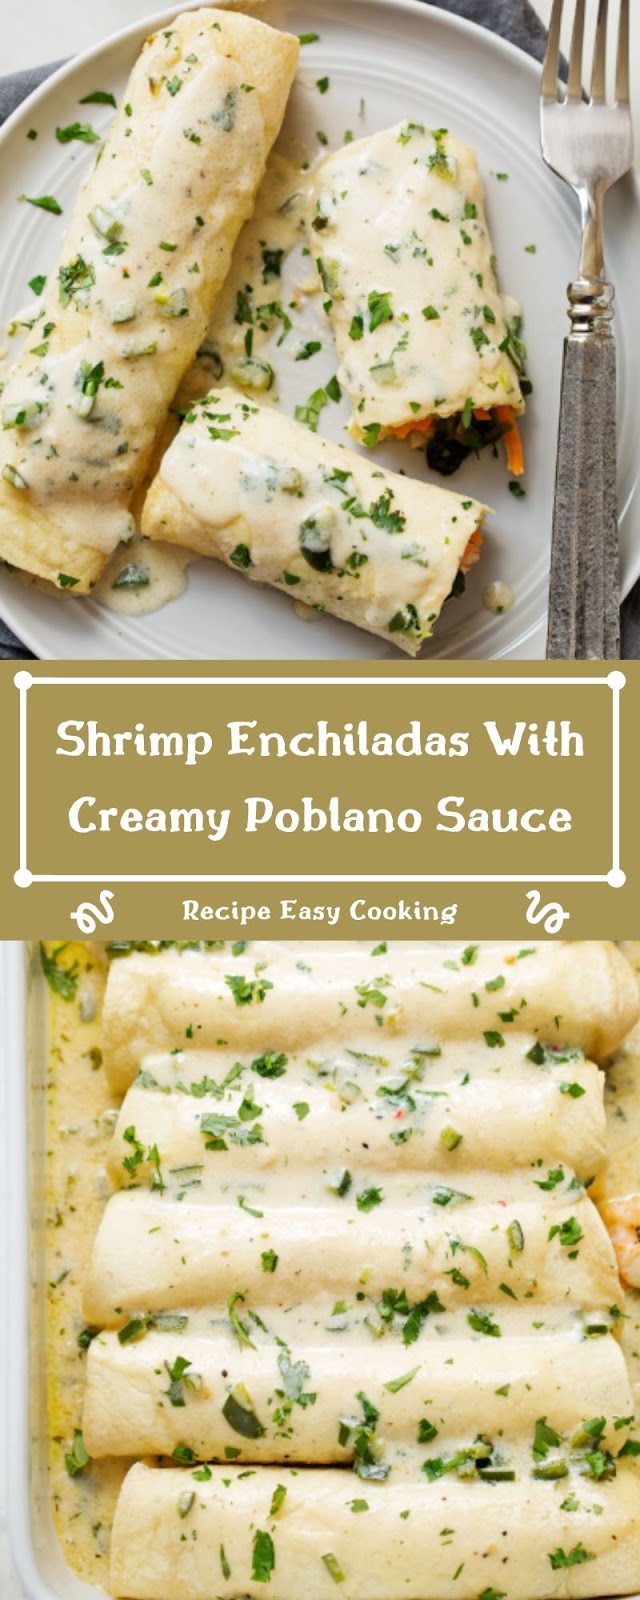 Shrimp Enchiladas With Creamy Poblano Sauce